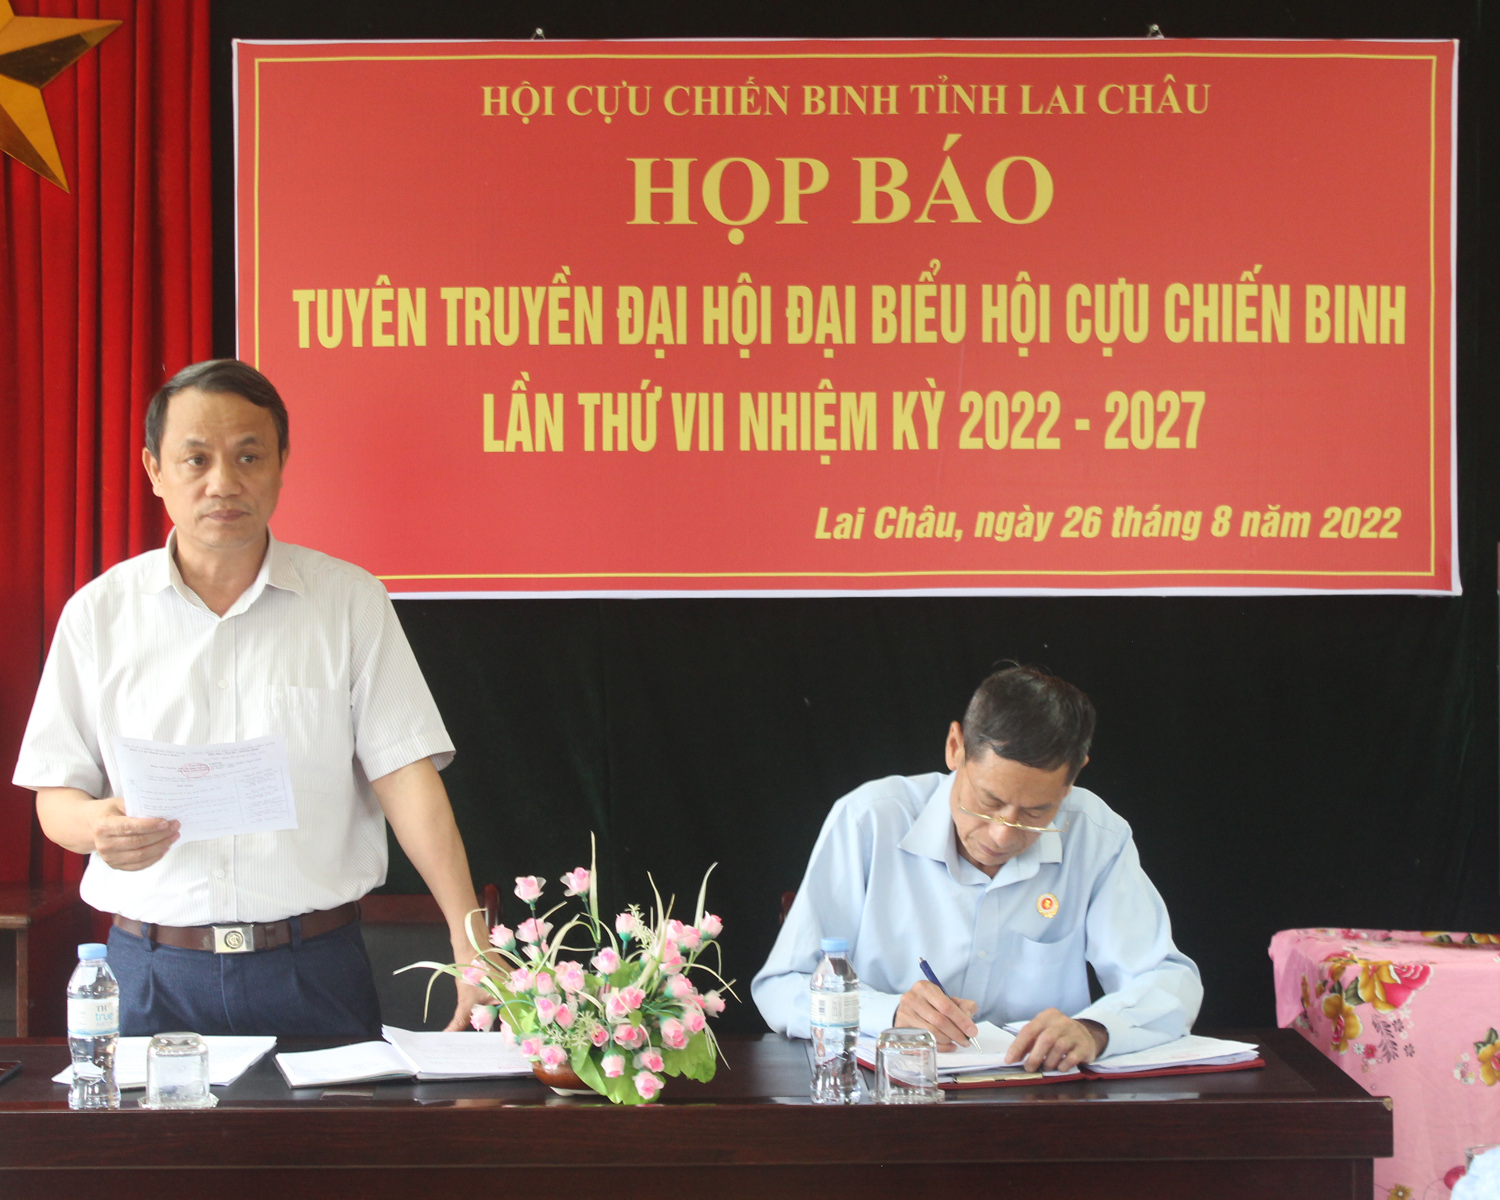 Đồng chí Đặng Thanh Sơn – Phó trưởng ban Thường trực, Ban Tuyên giáo Tỉnh ủy phát biểu tại buổi họp báo